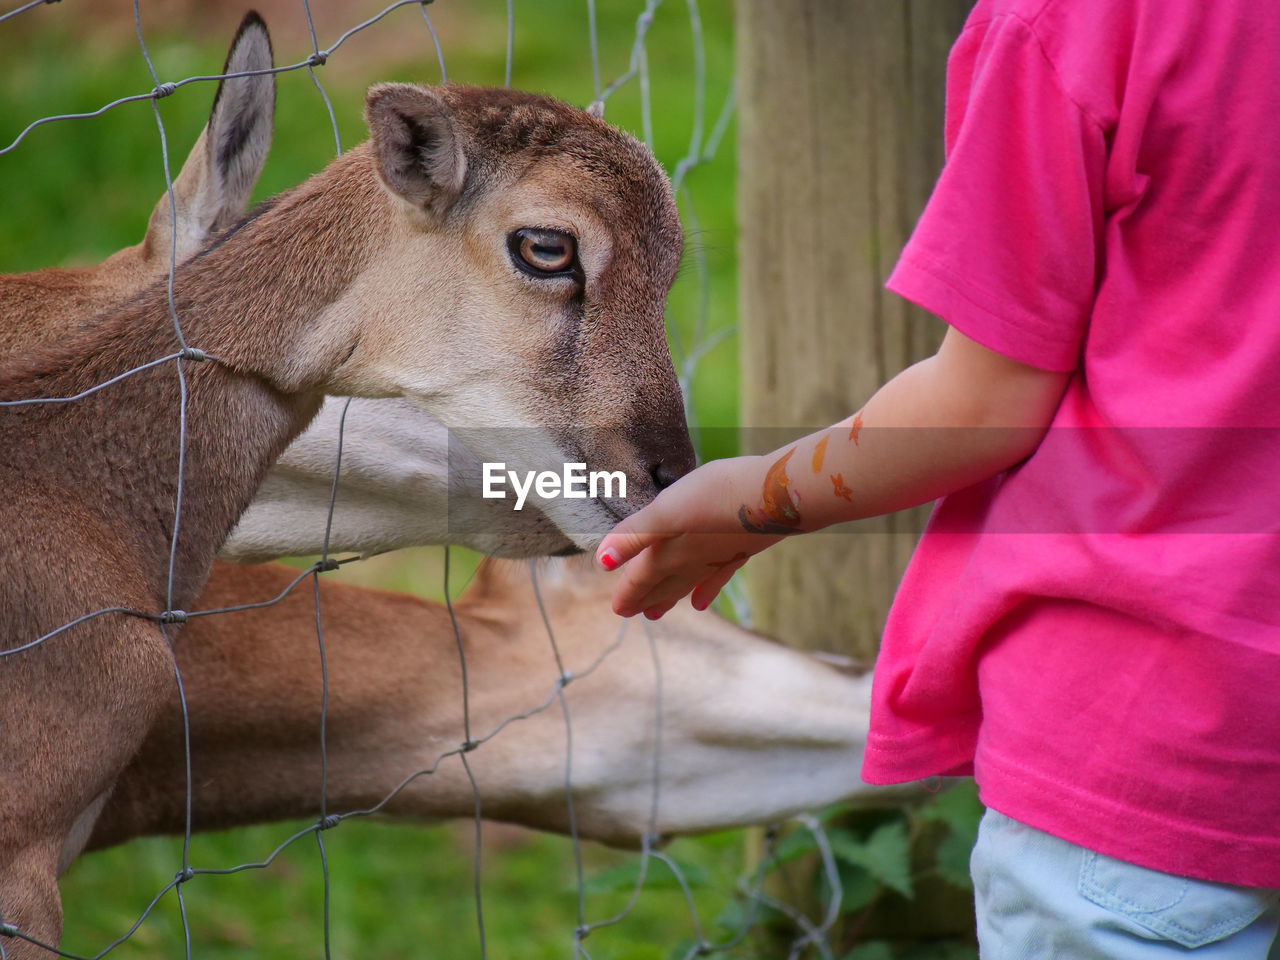 A little girl feeds deer 